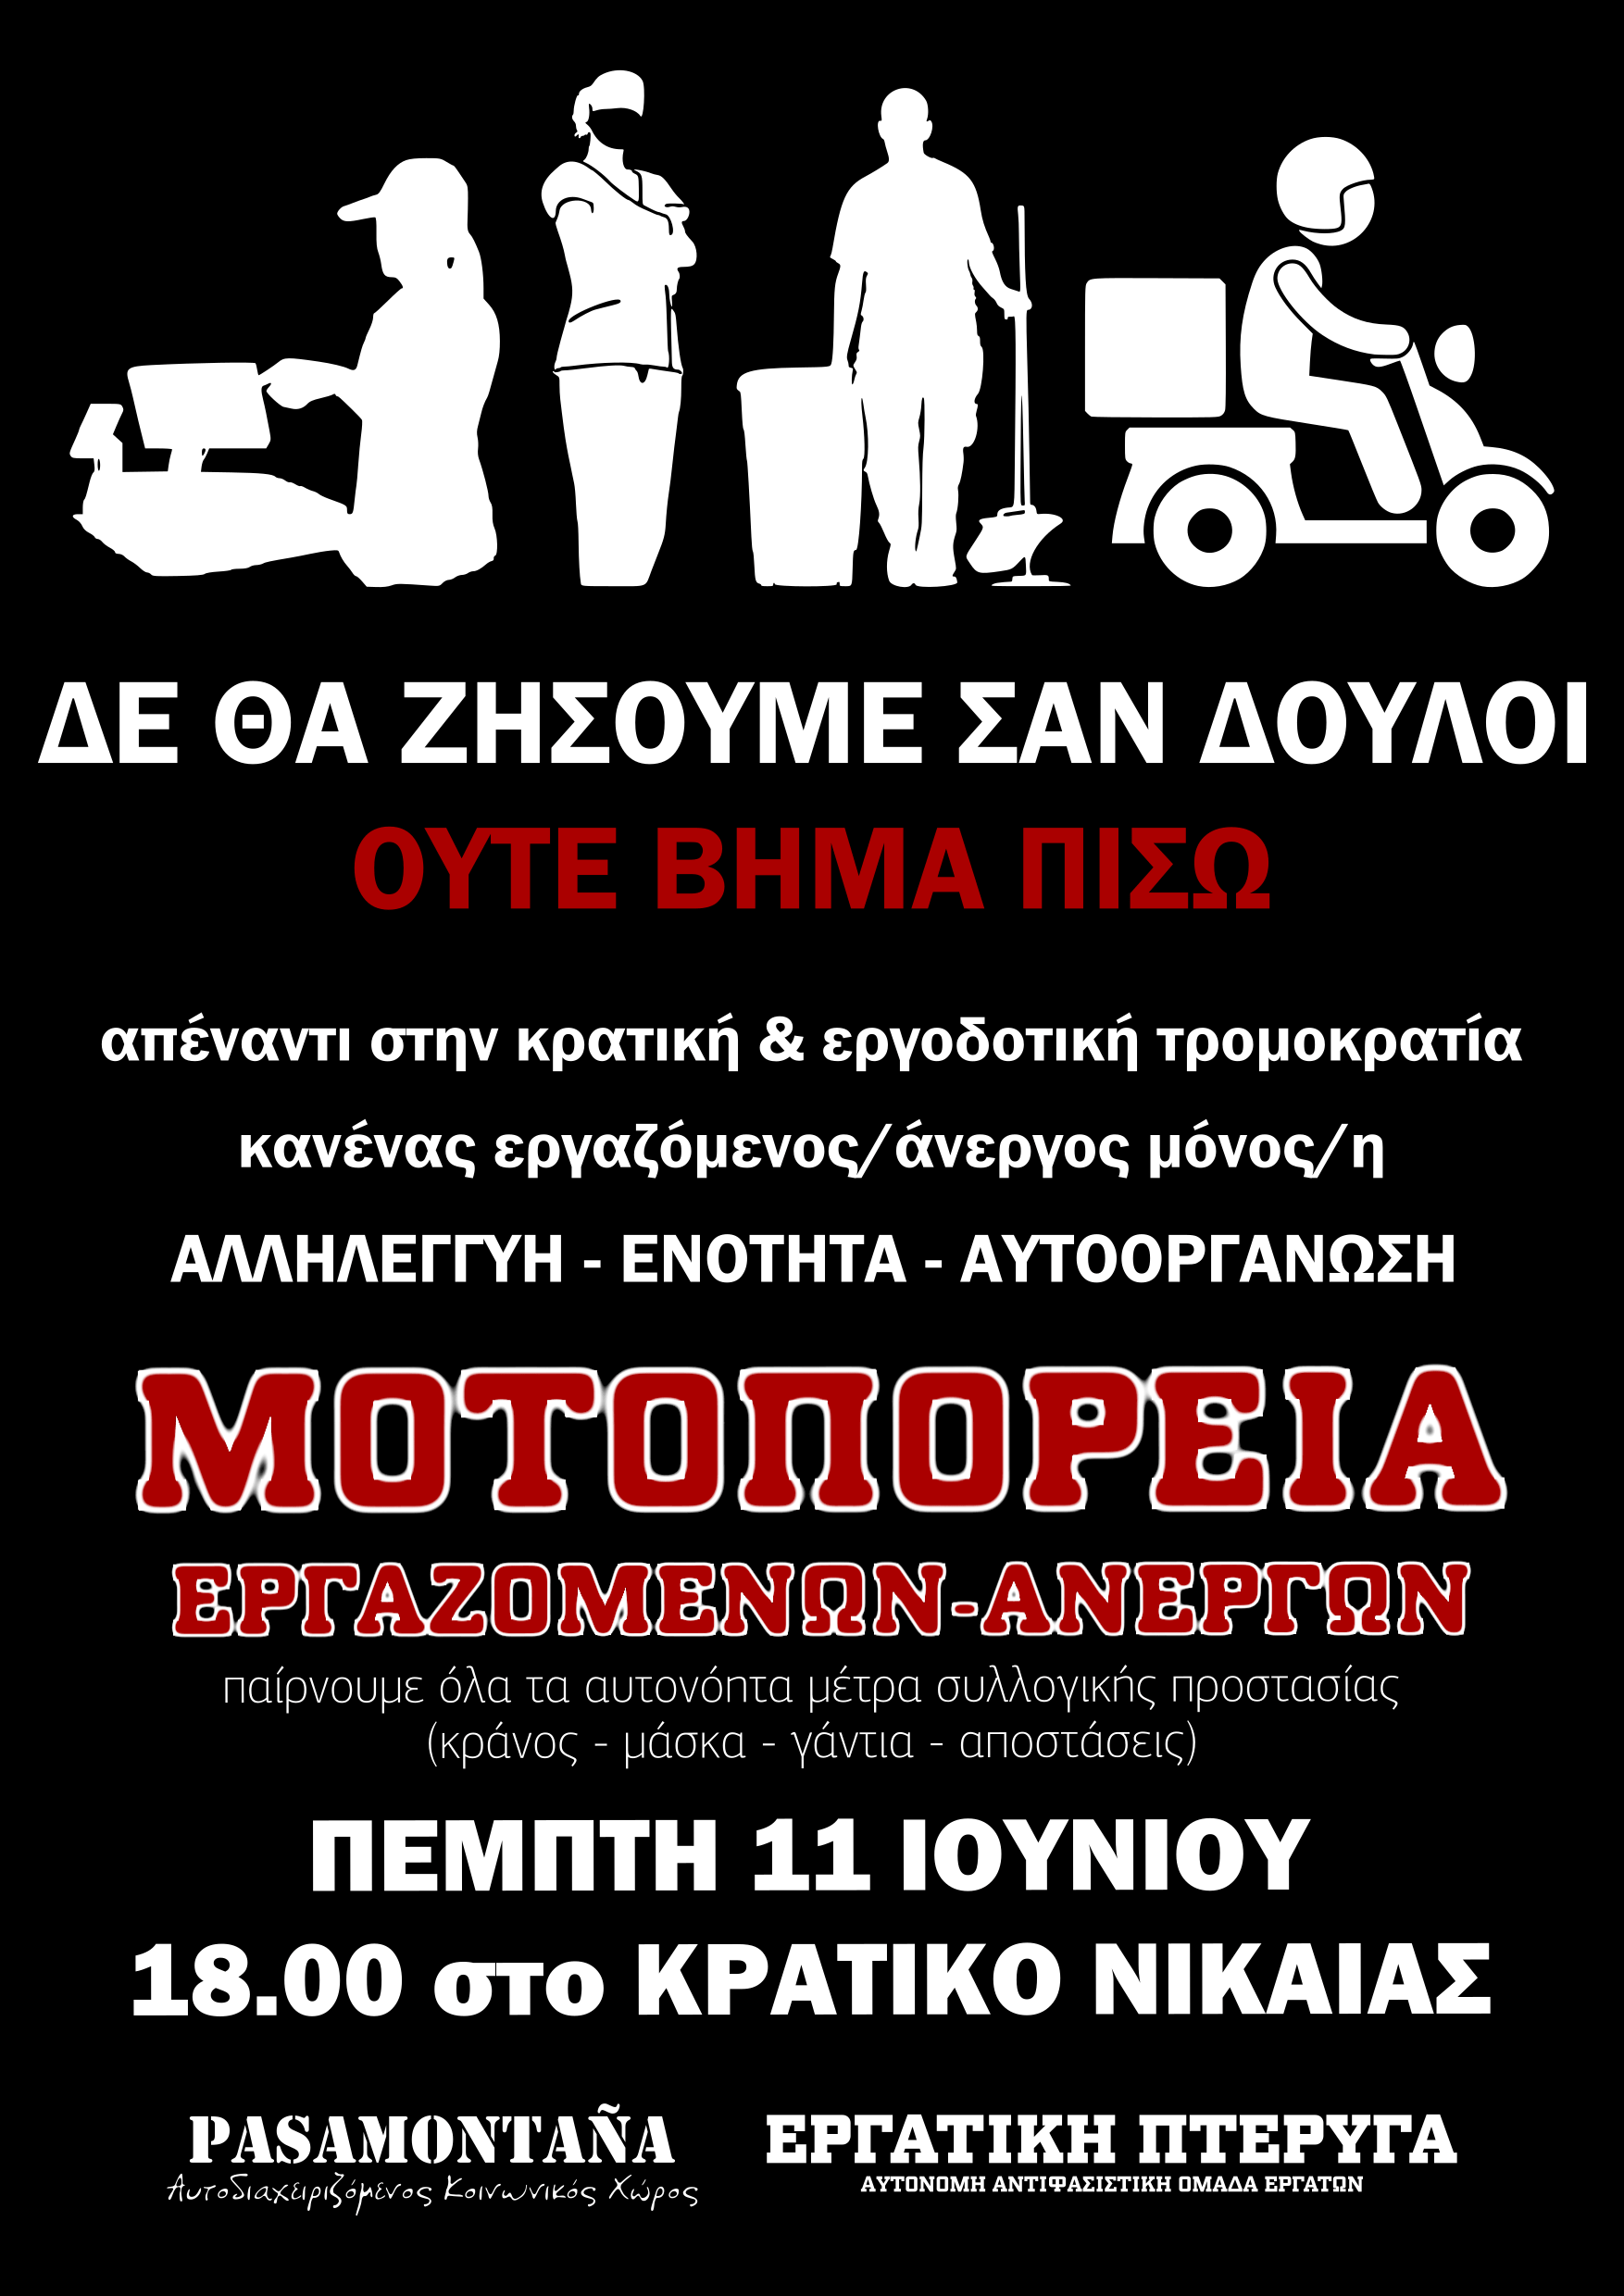 Κάλεσμα στήριξης μοτοπορείας στο Κρατικό Νίκαιας την Πέμπτη 11/6 στις 18:00